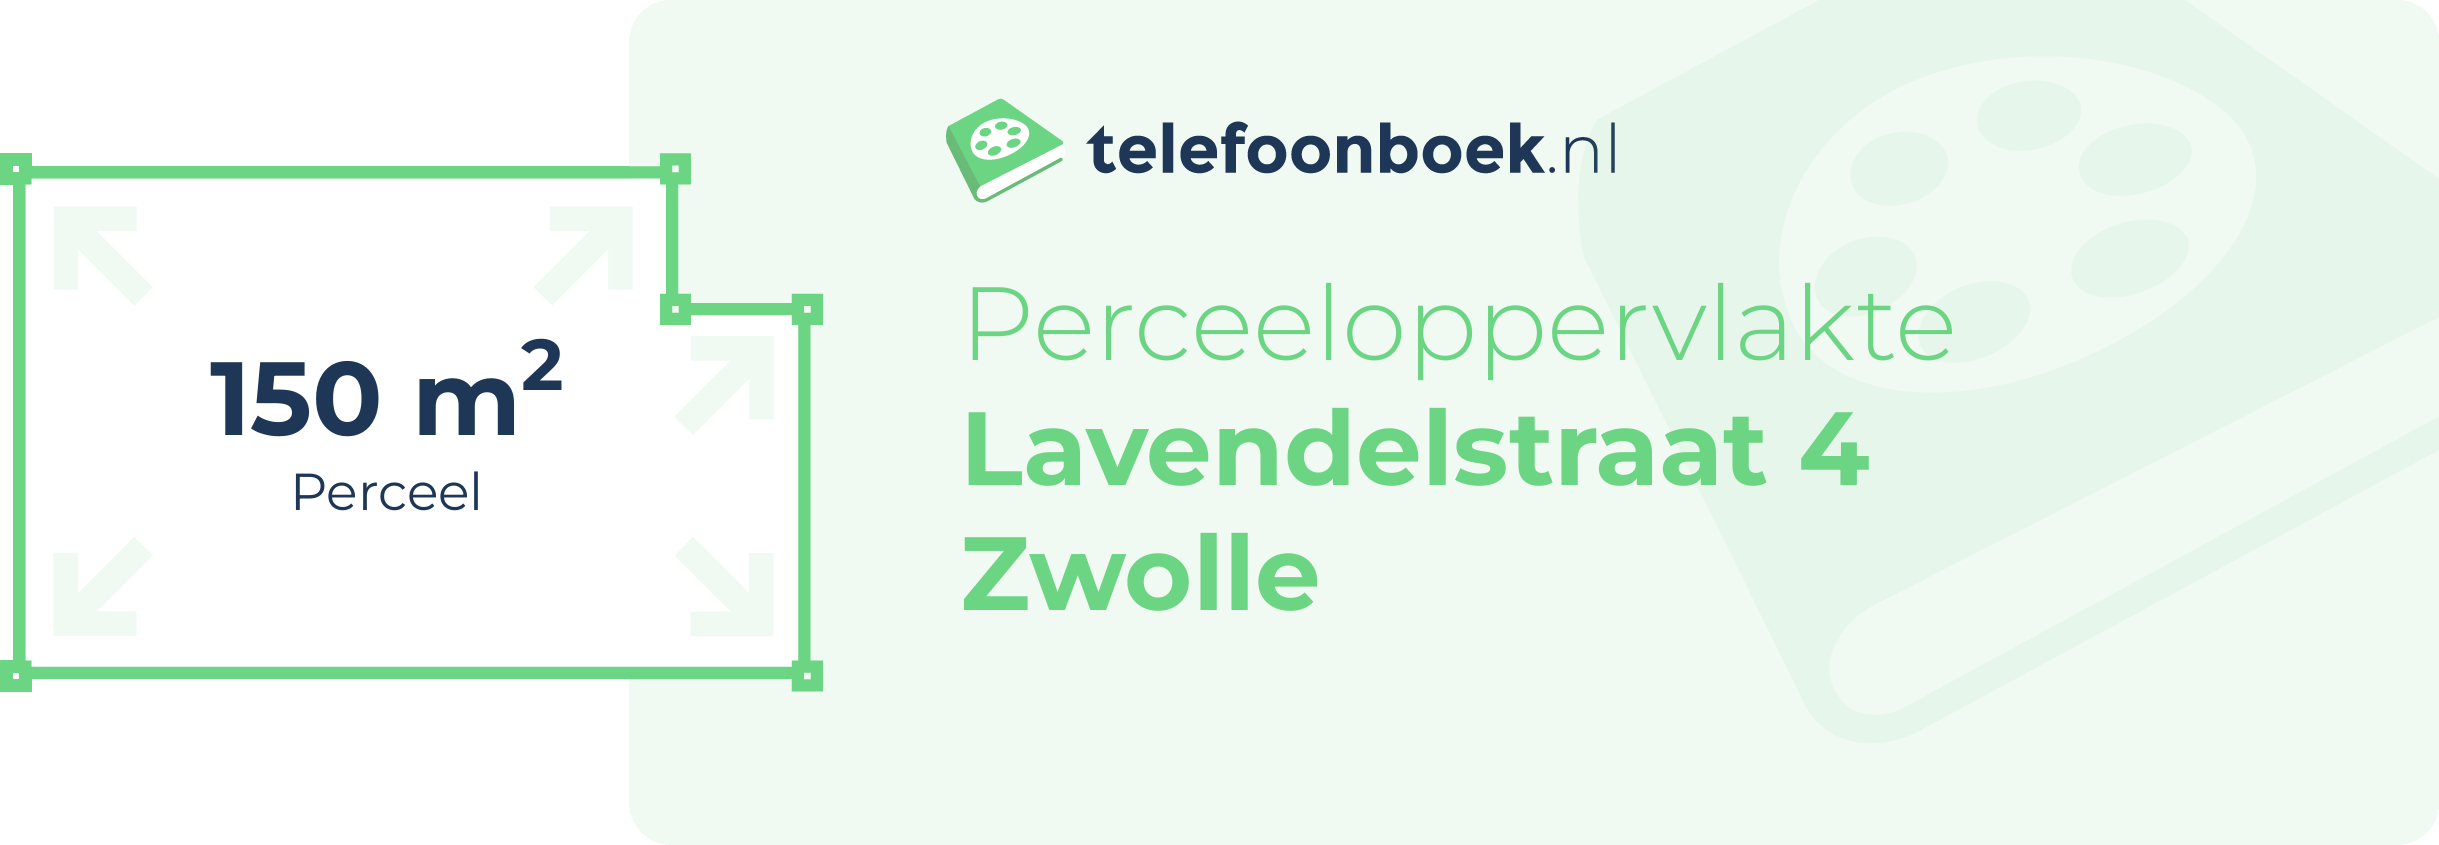 Perceeloppervlakte Lavendelstraat 4 Zwolle